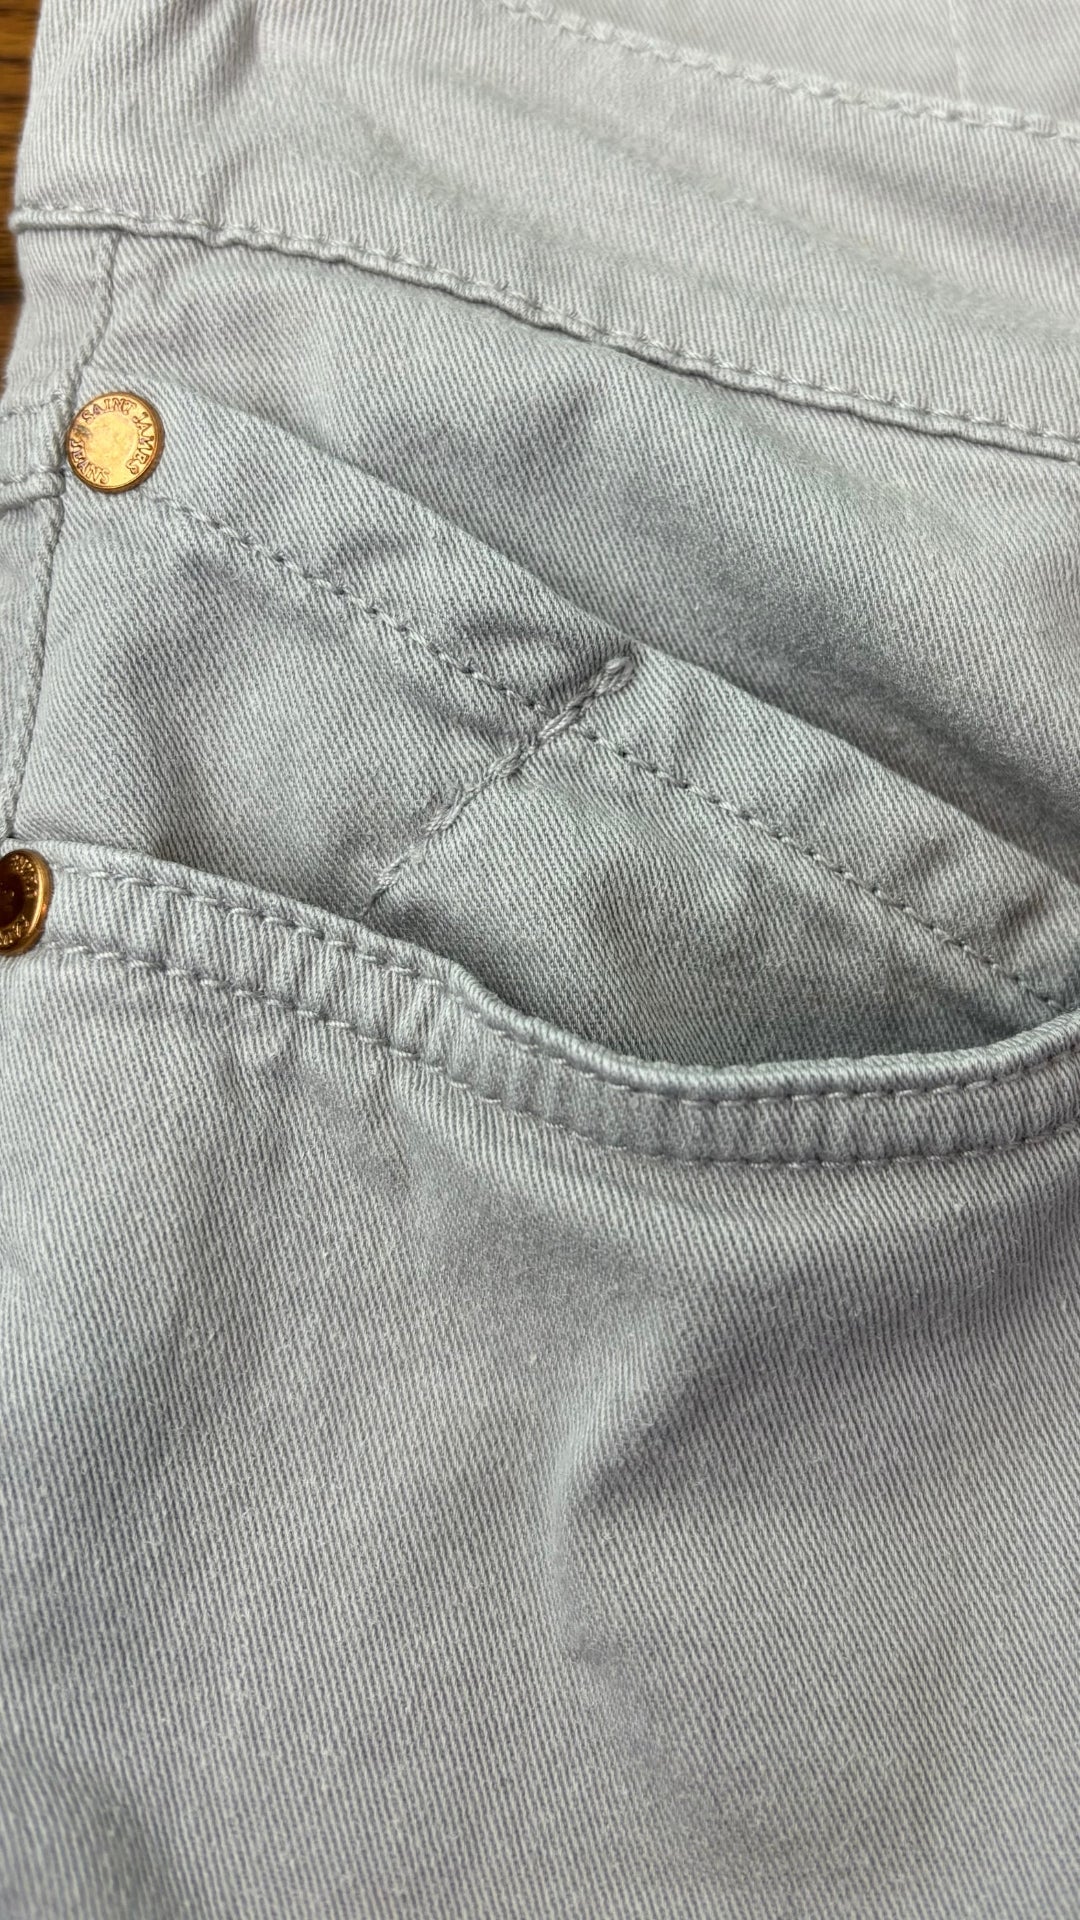 Pantalon style jeans gris coupe droite taille moyenne Saint James, taille 4 (xs). Vue de la poche de côté.